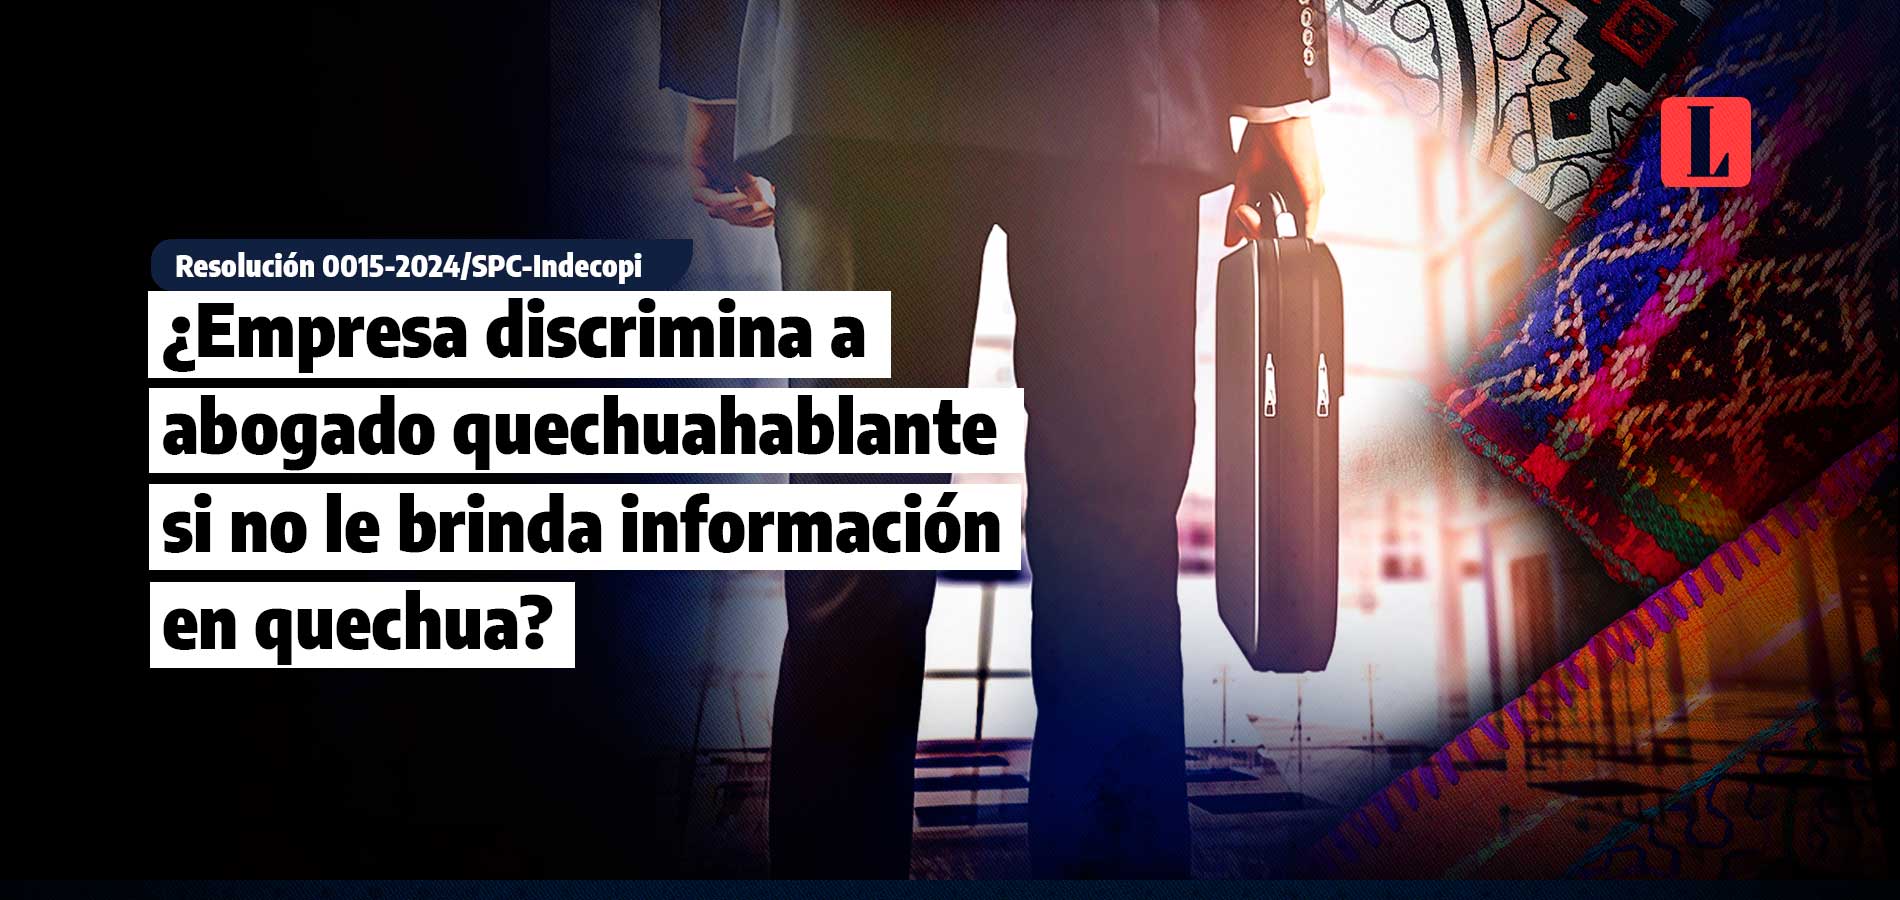 ¿Empresa discrimina a abogado quechuahablante si no le brinda información en quechua?